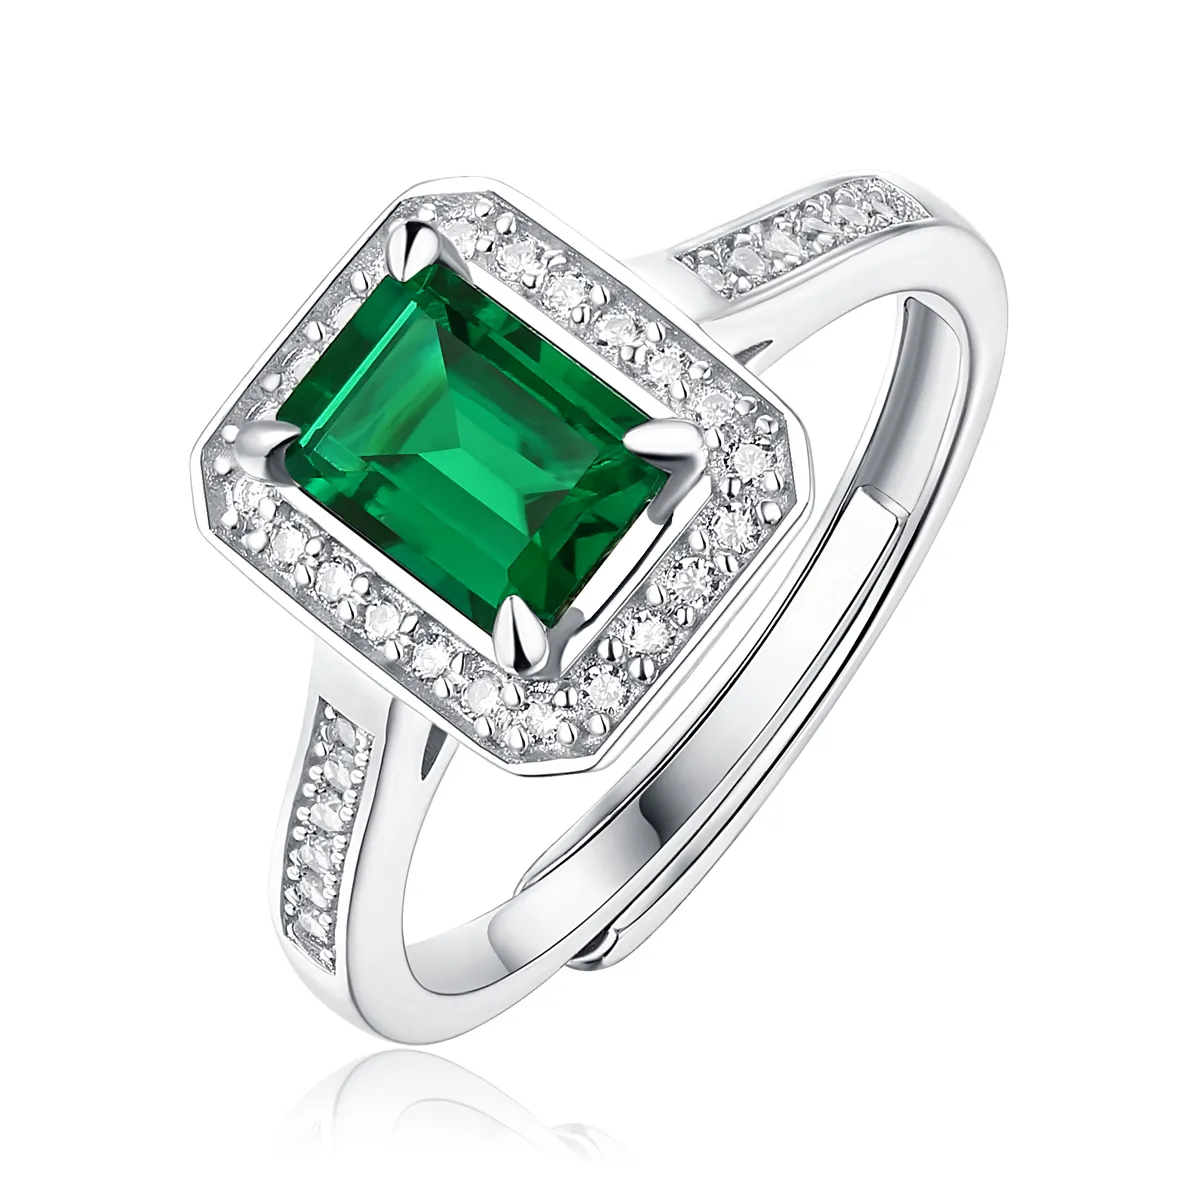 Yulaili नई लोकप्रिय 925 स्टर्लिंग चांदी वेडिंग प्राकृतिक वर्ग डायमंड हरे पन्ना अंगूठी नाजुक सरल काम कब्जे अंगूठी